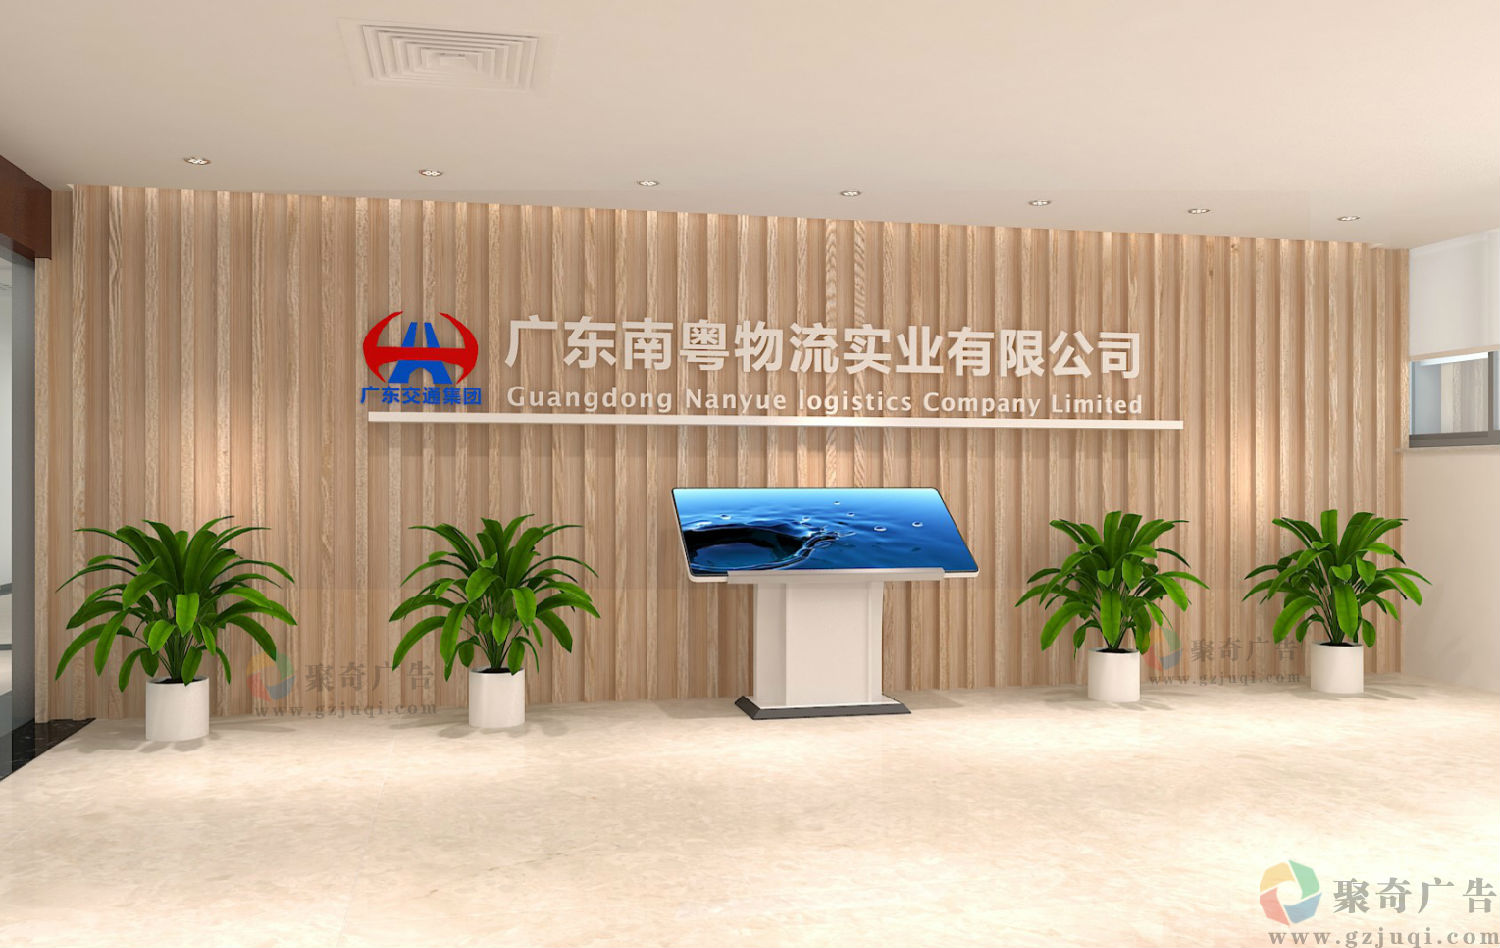 南粤物流企业办公环境形象墙设计